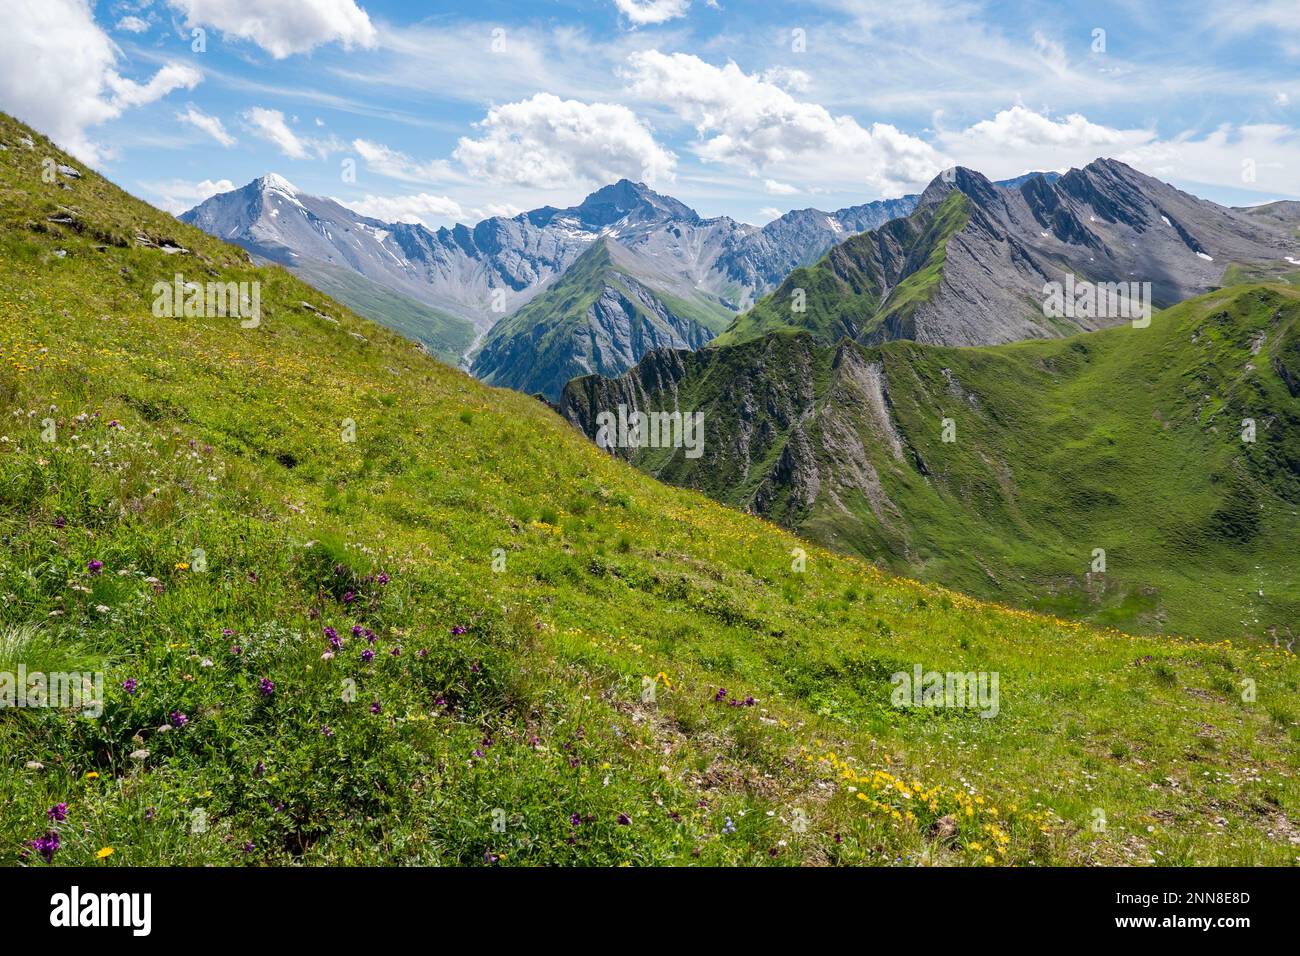 Enormi vette montane visibili dall'Alp Trida Sattel in Austria verso la Svizzera. In primo piano molti fiori ed erbe ed anche un cielo nuvoloso. Foto Stock